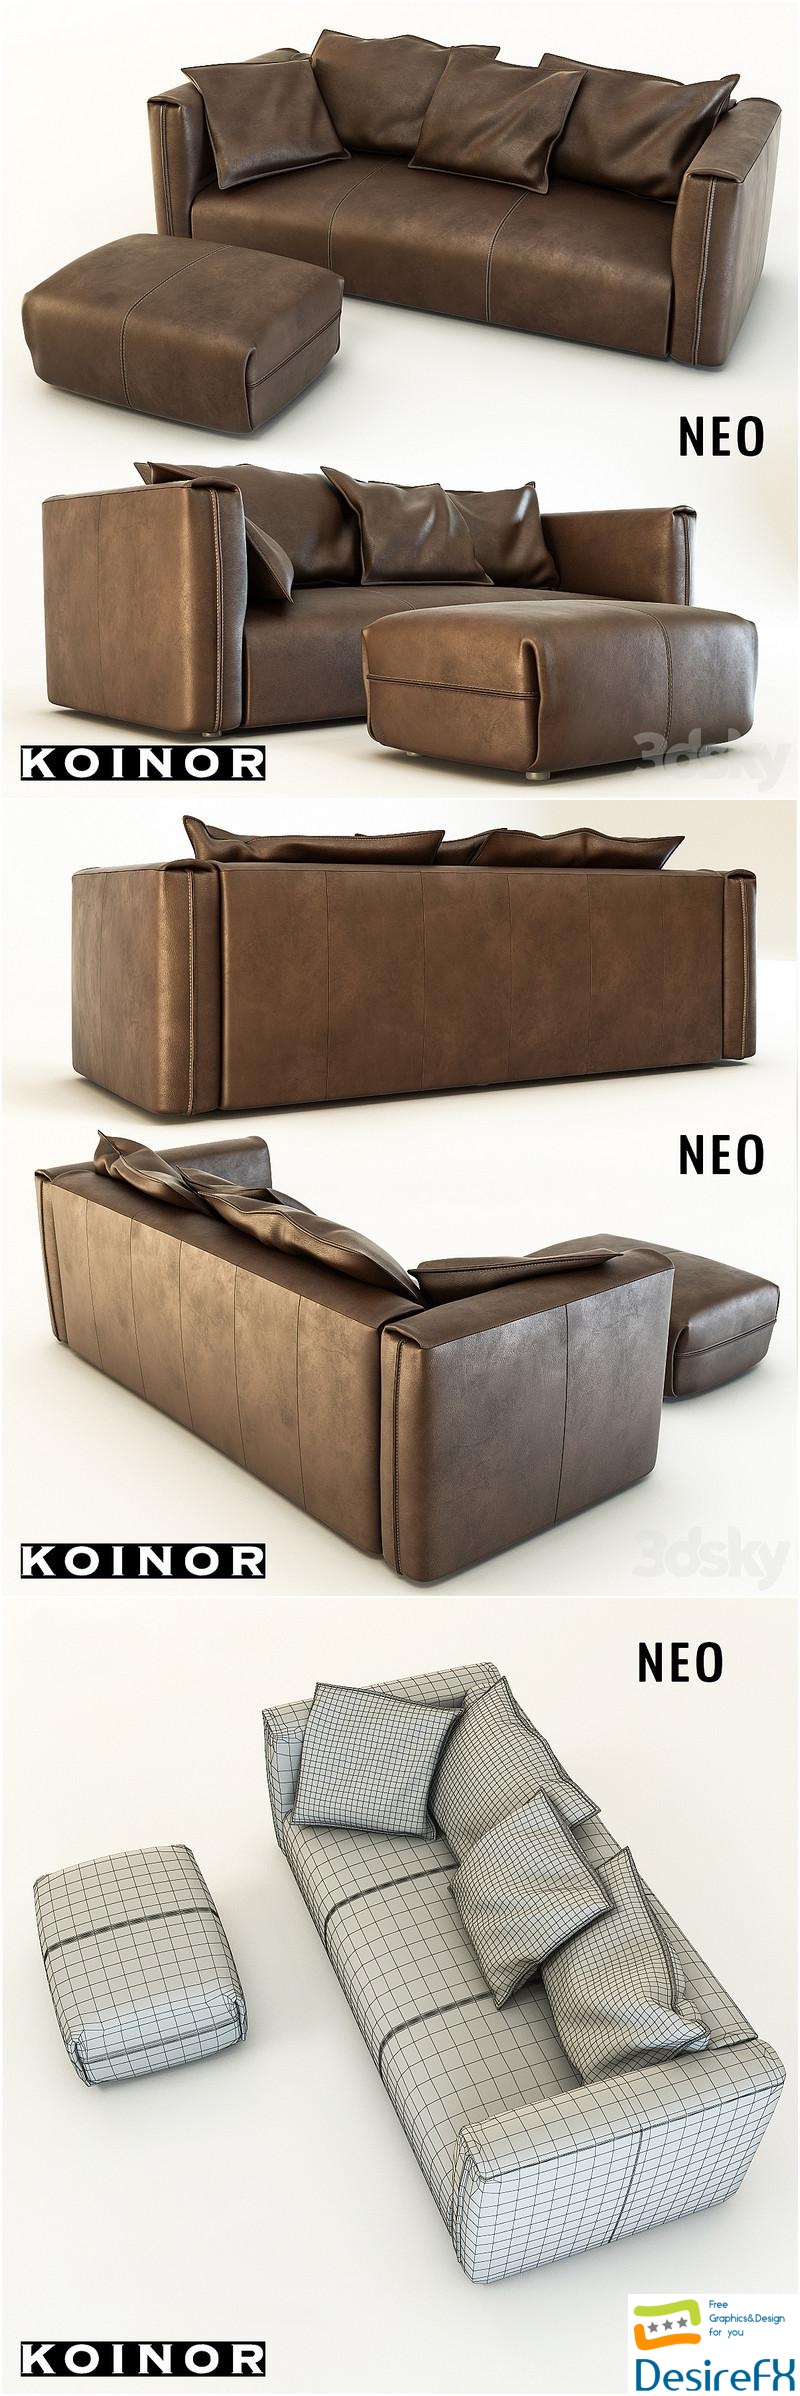 Neo sofa 3D Model